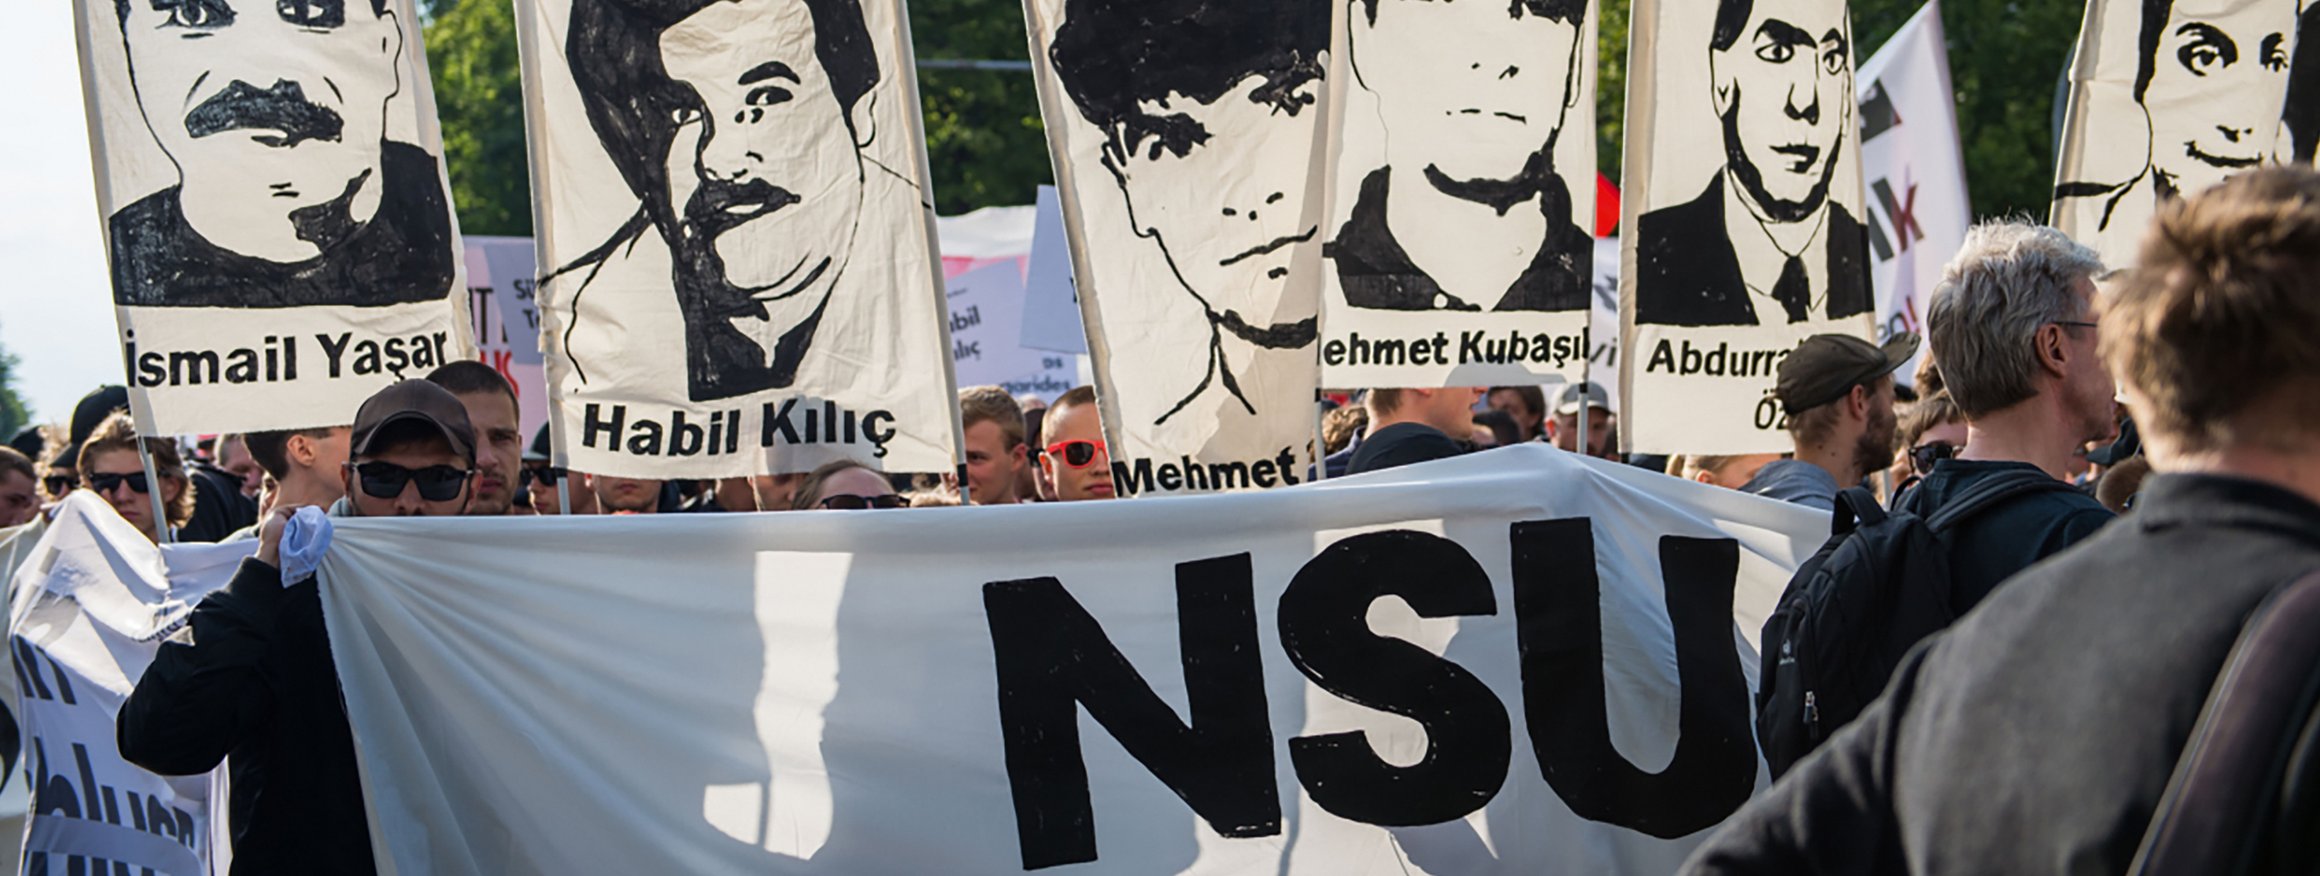 Menschen protestieren gegen die NSU und erinnern an die Opfer der rechtsextremistischen Gruppe